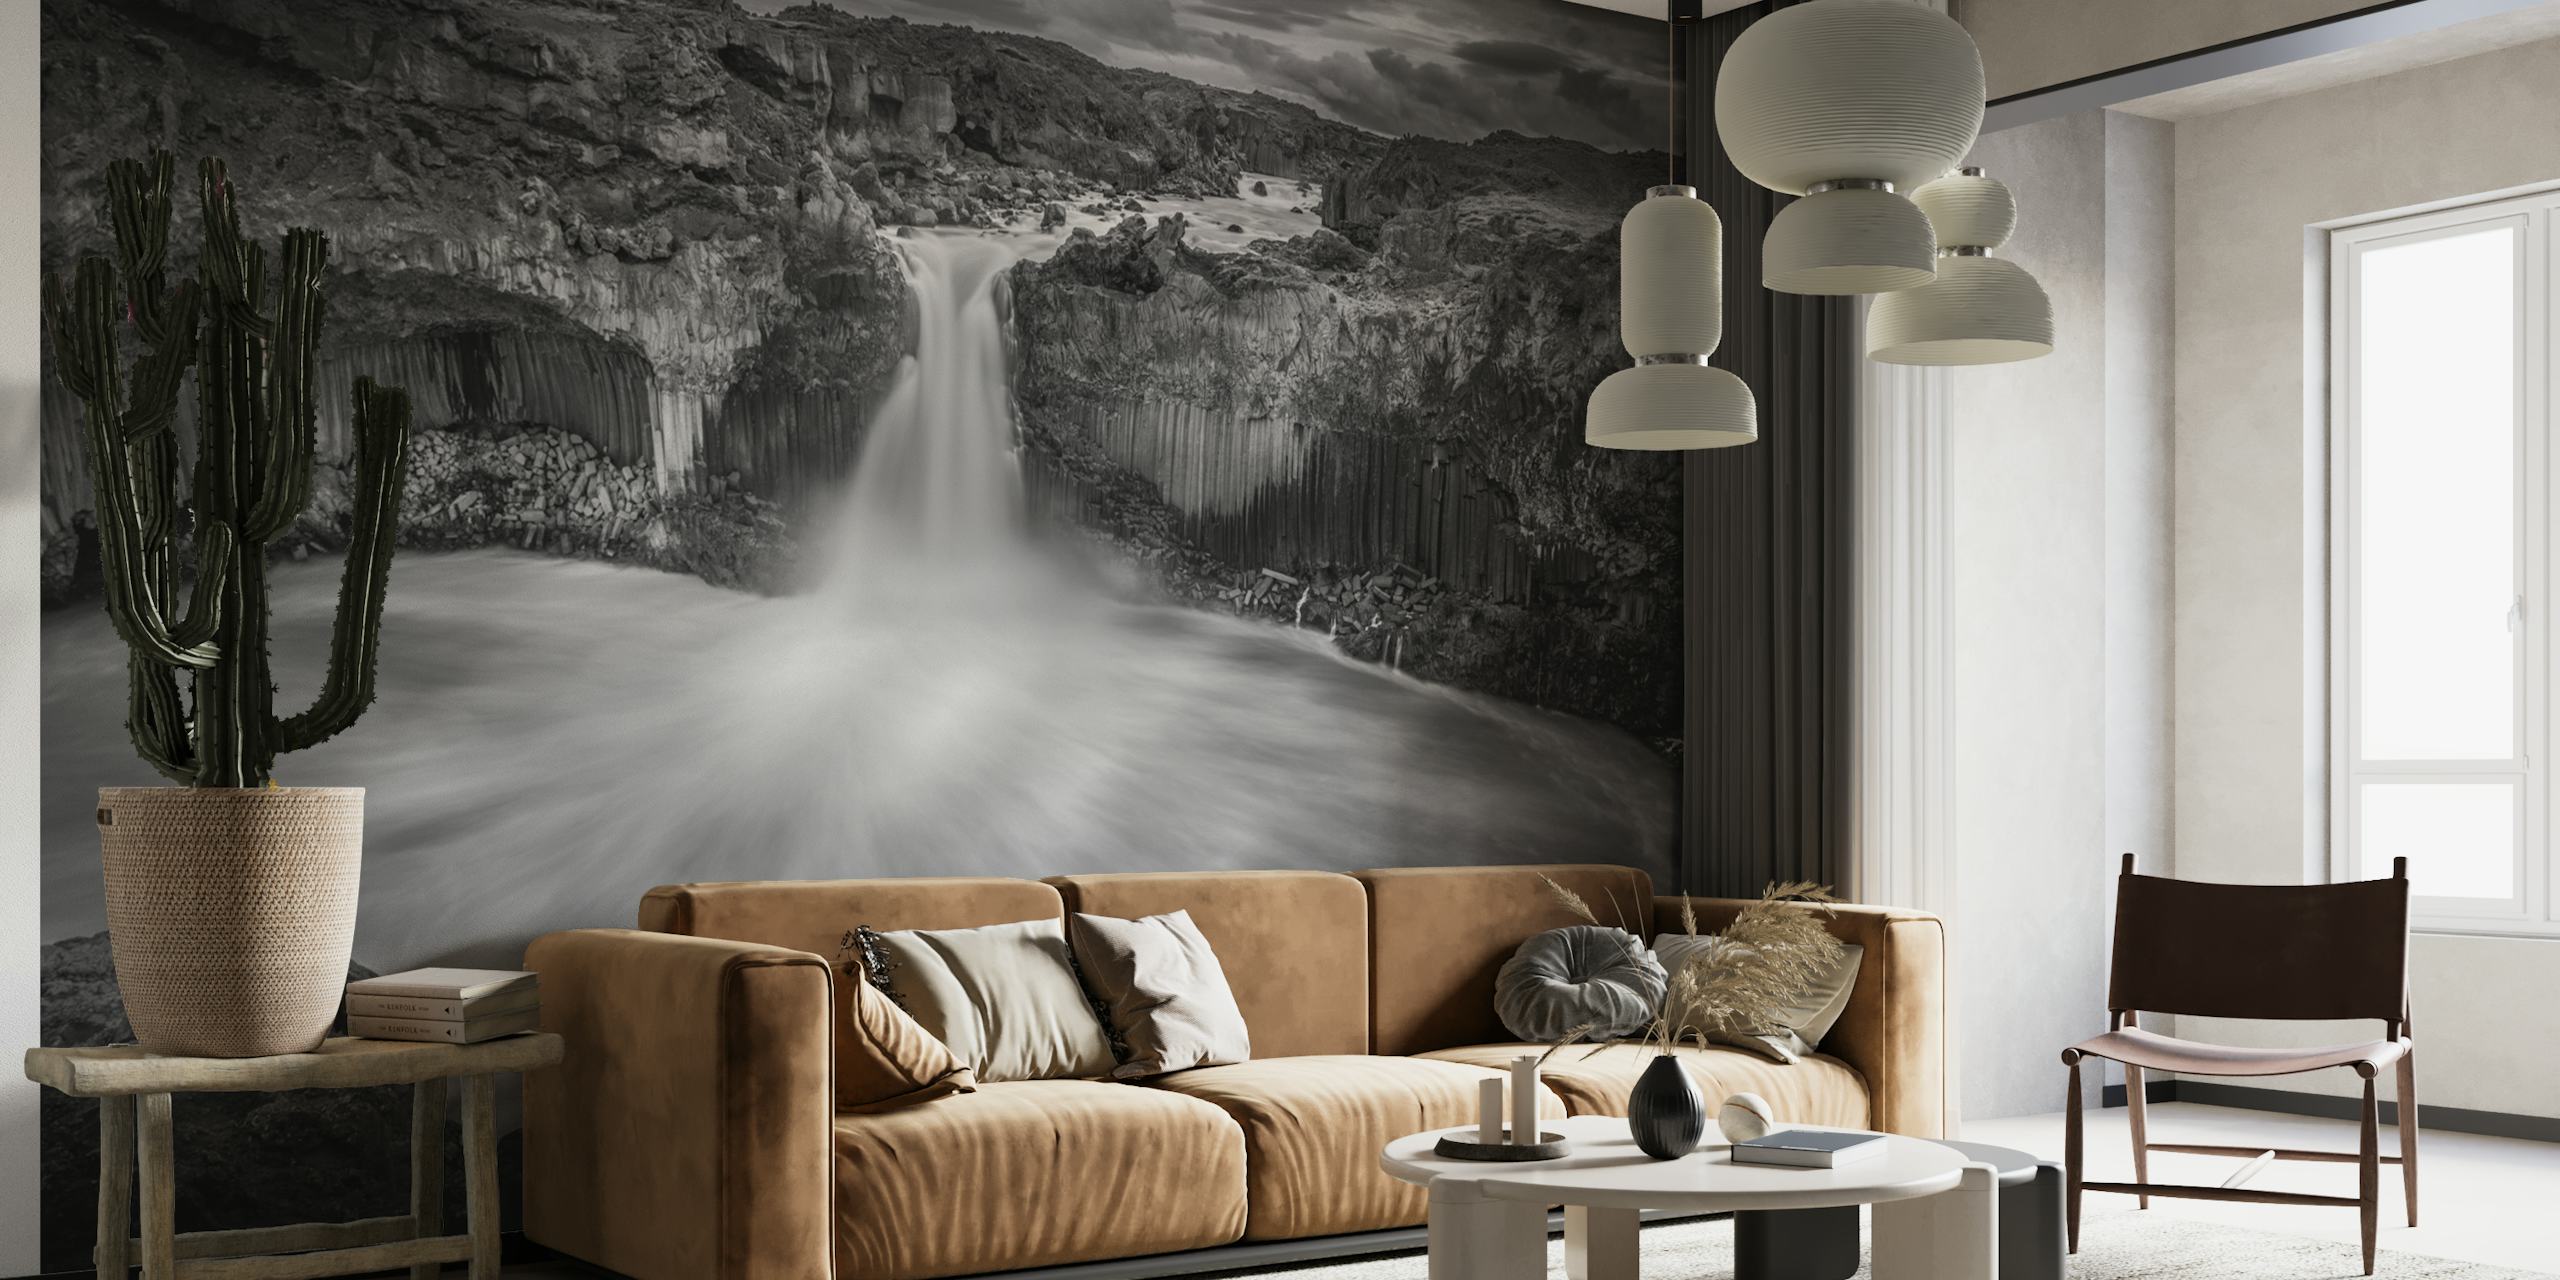 Mural de parede em cascata islandês em preto e branco exibindo contrastes dramáticos e a grandeza da natureza.